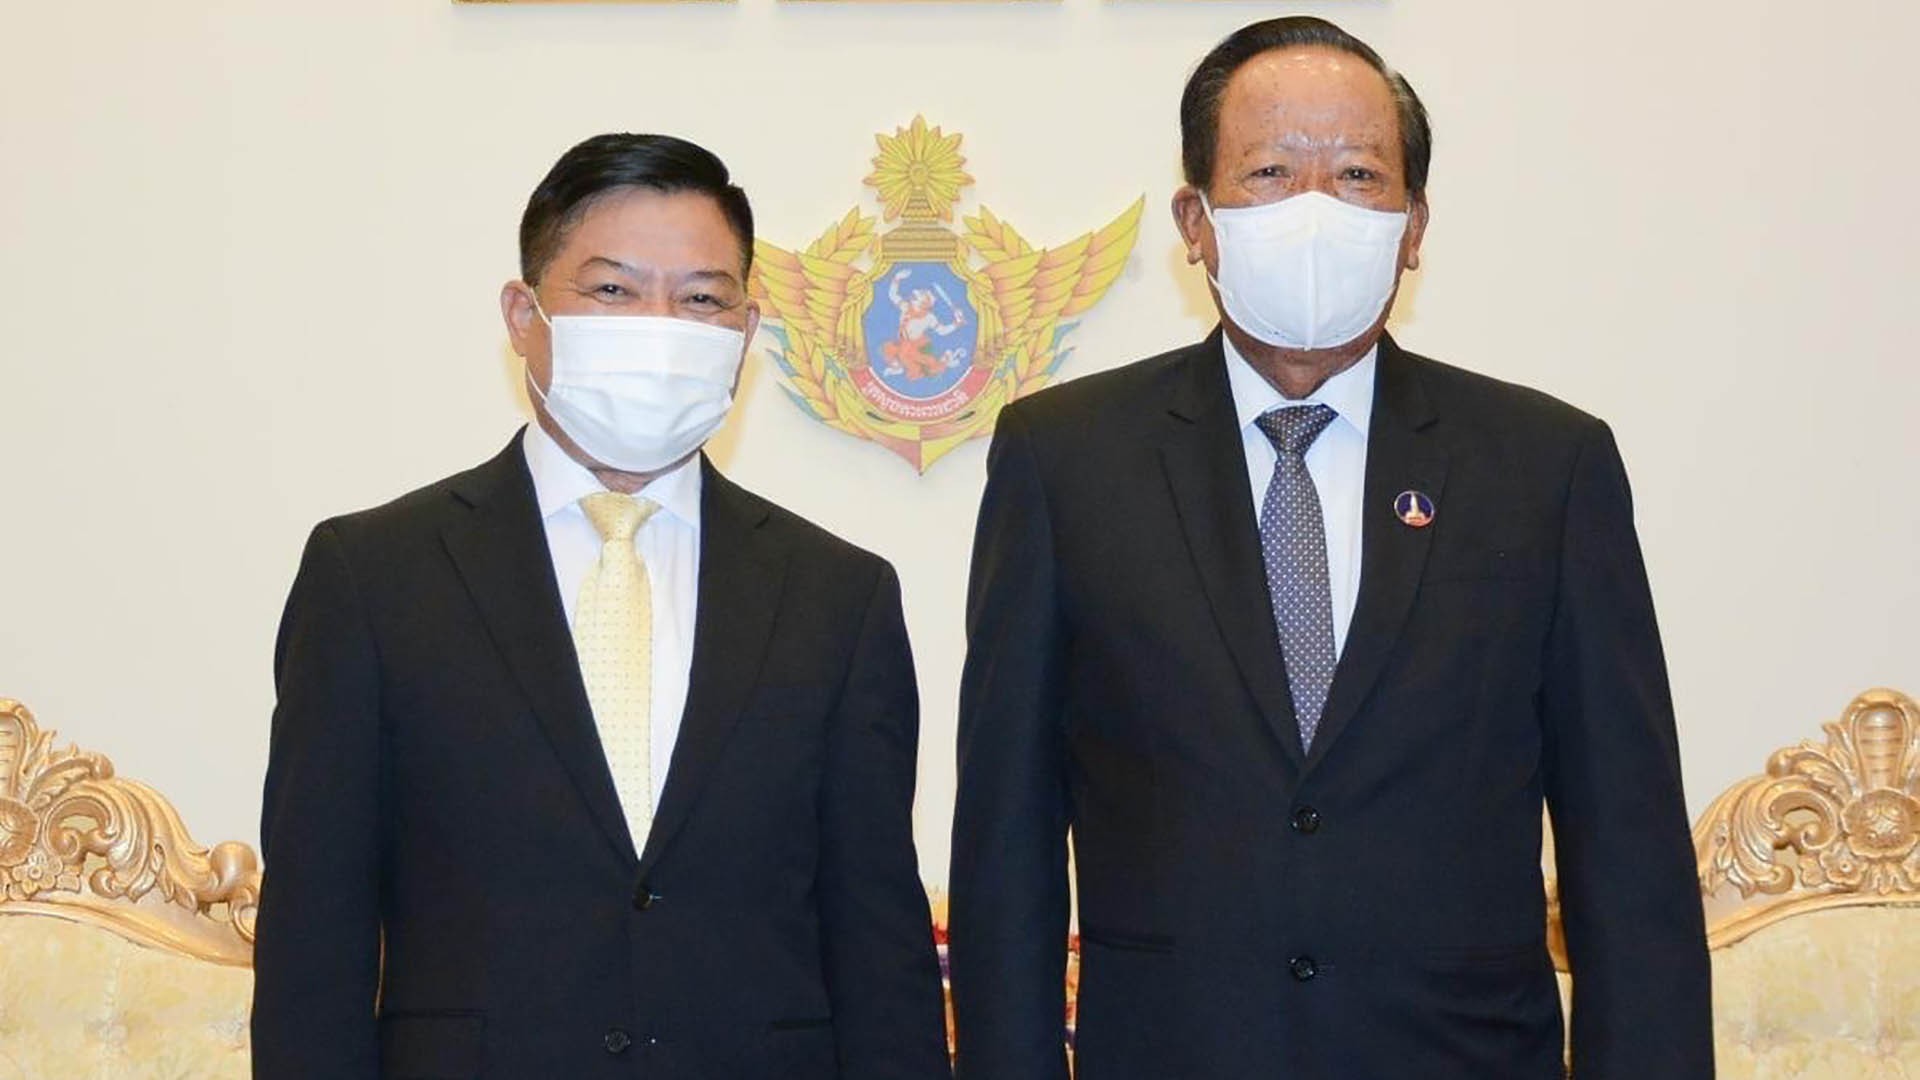 Phó Thủ tướng, Bộ trưởng Bộ Quốc phòng Campuchia tiếp Đại sứ Việt Nam đến chào xã giao